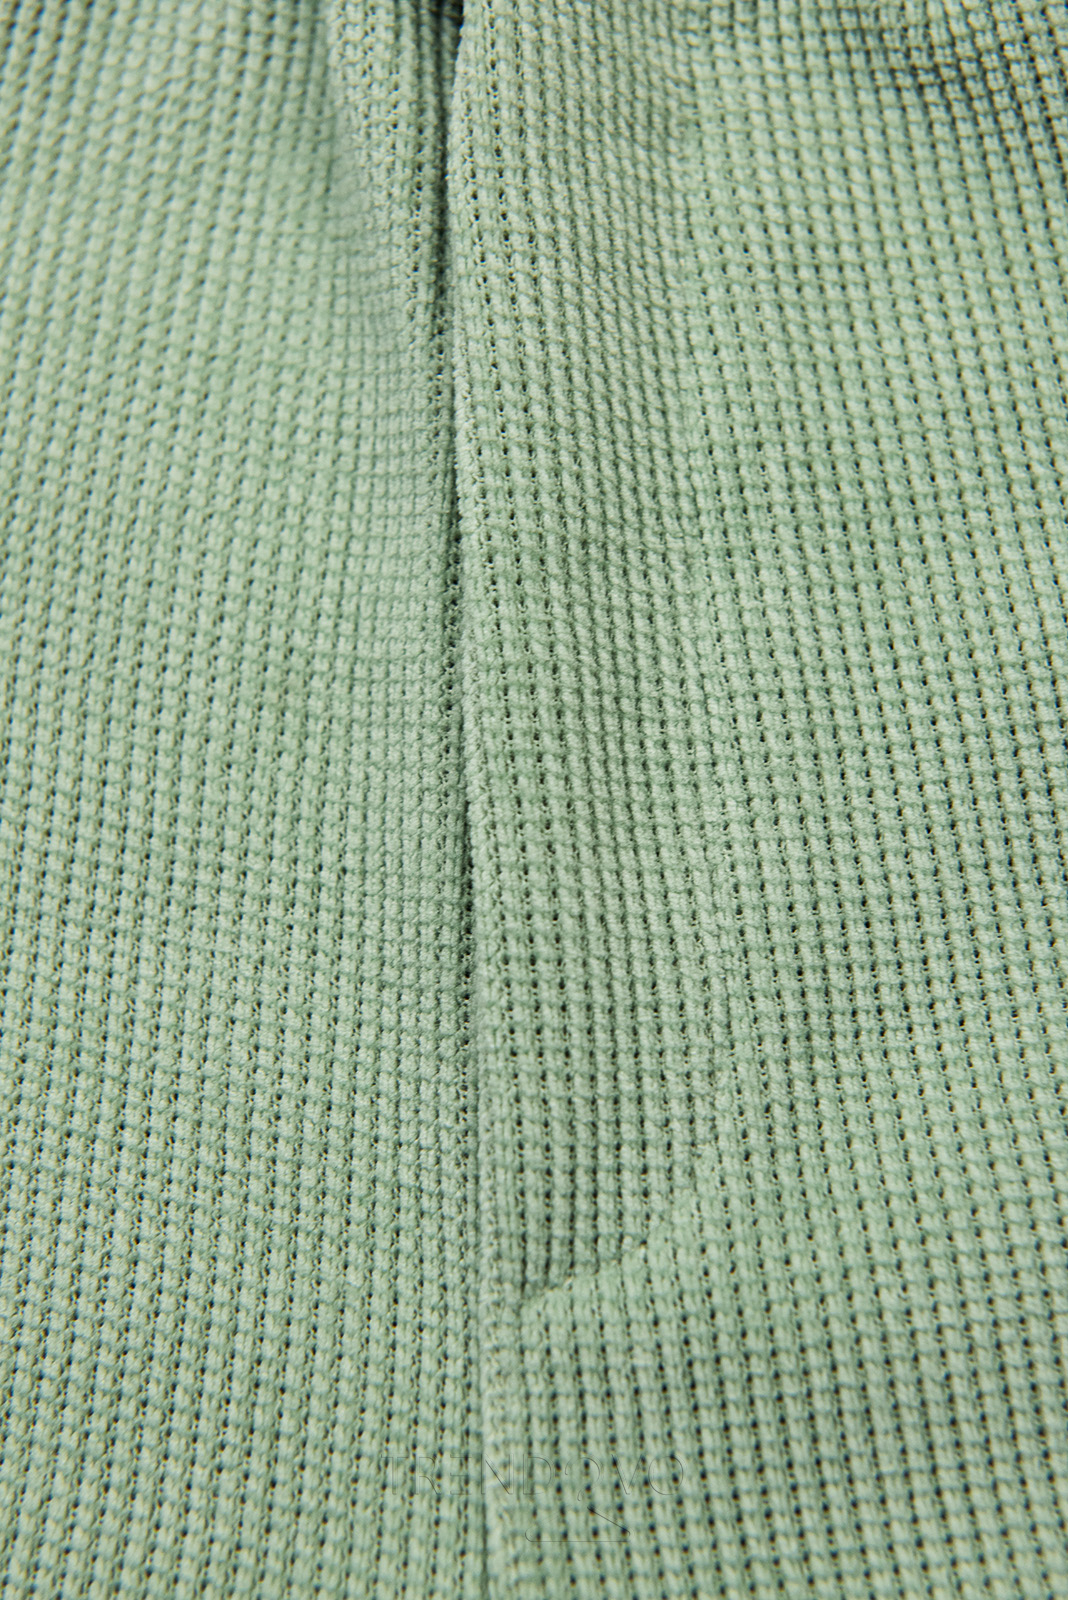 Světle zelené ležérní kalhoty s gumou v pase